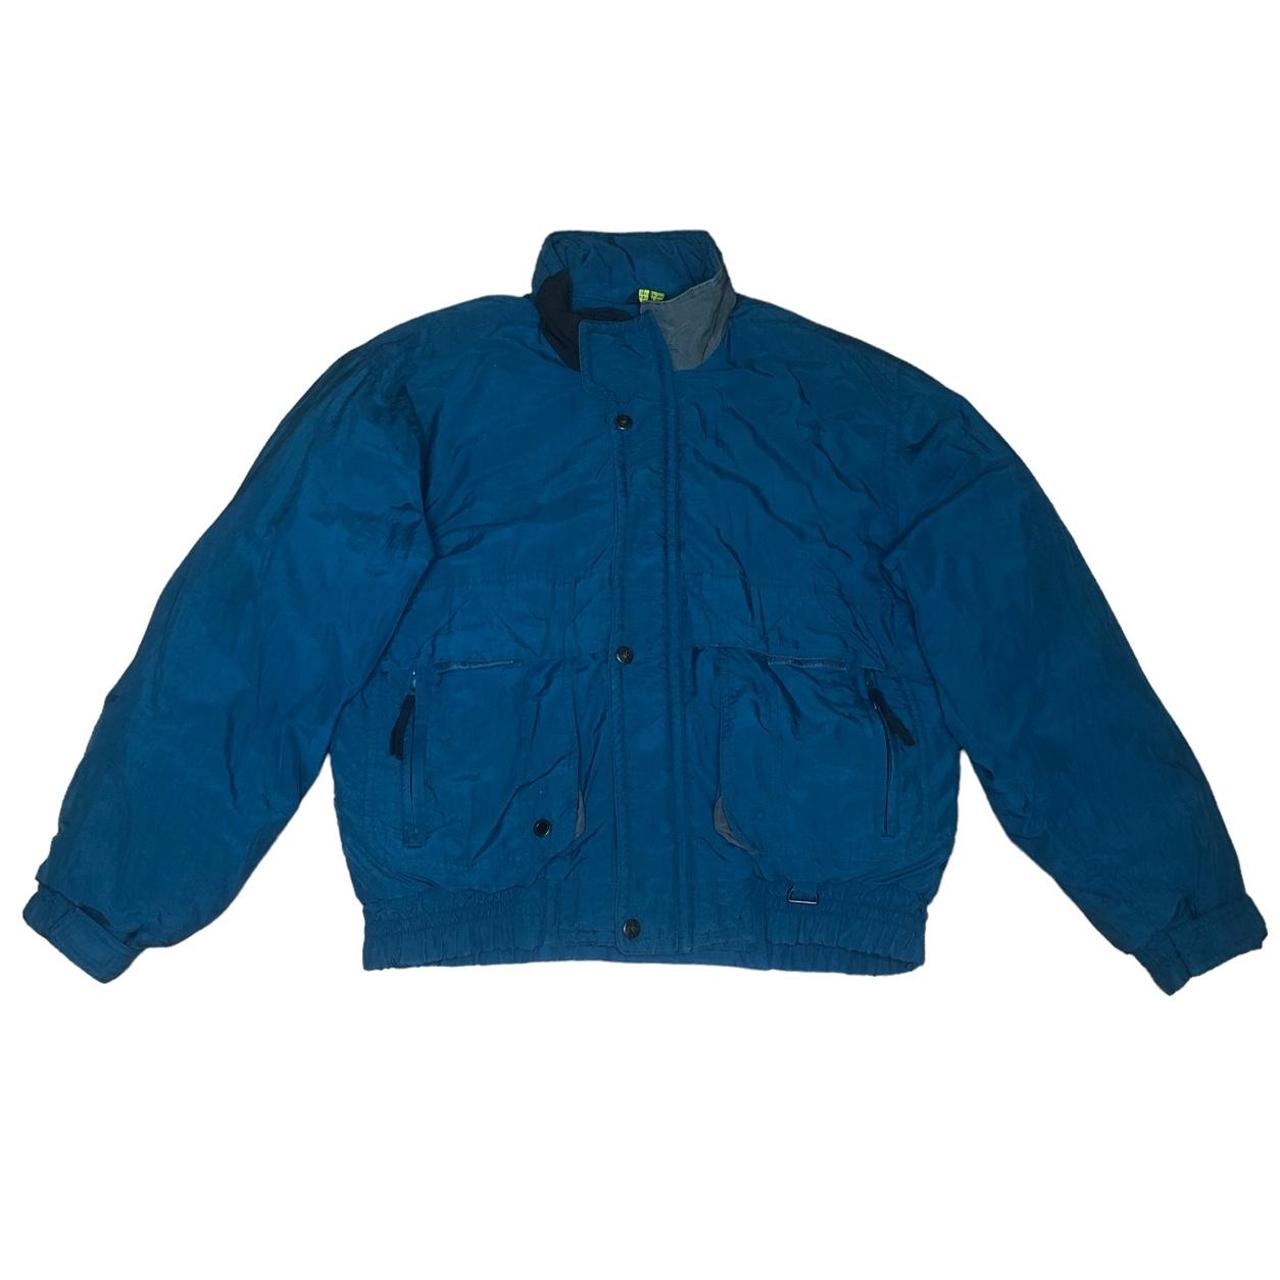 Vintage Cobalt Blue Outdoor Bomber Jacket Color:... - Depop